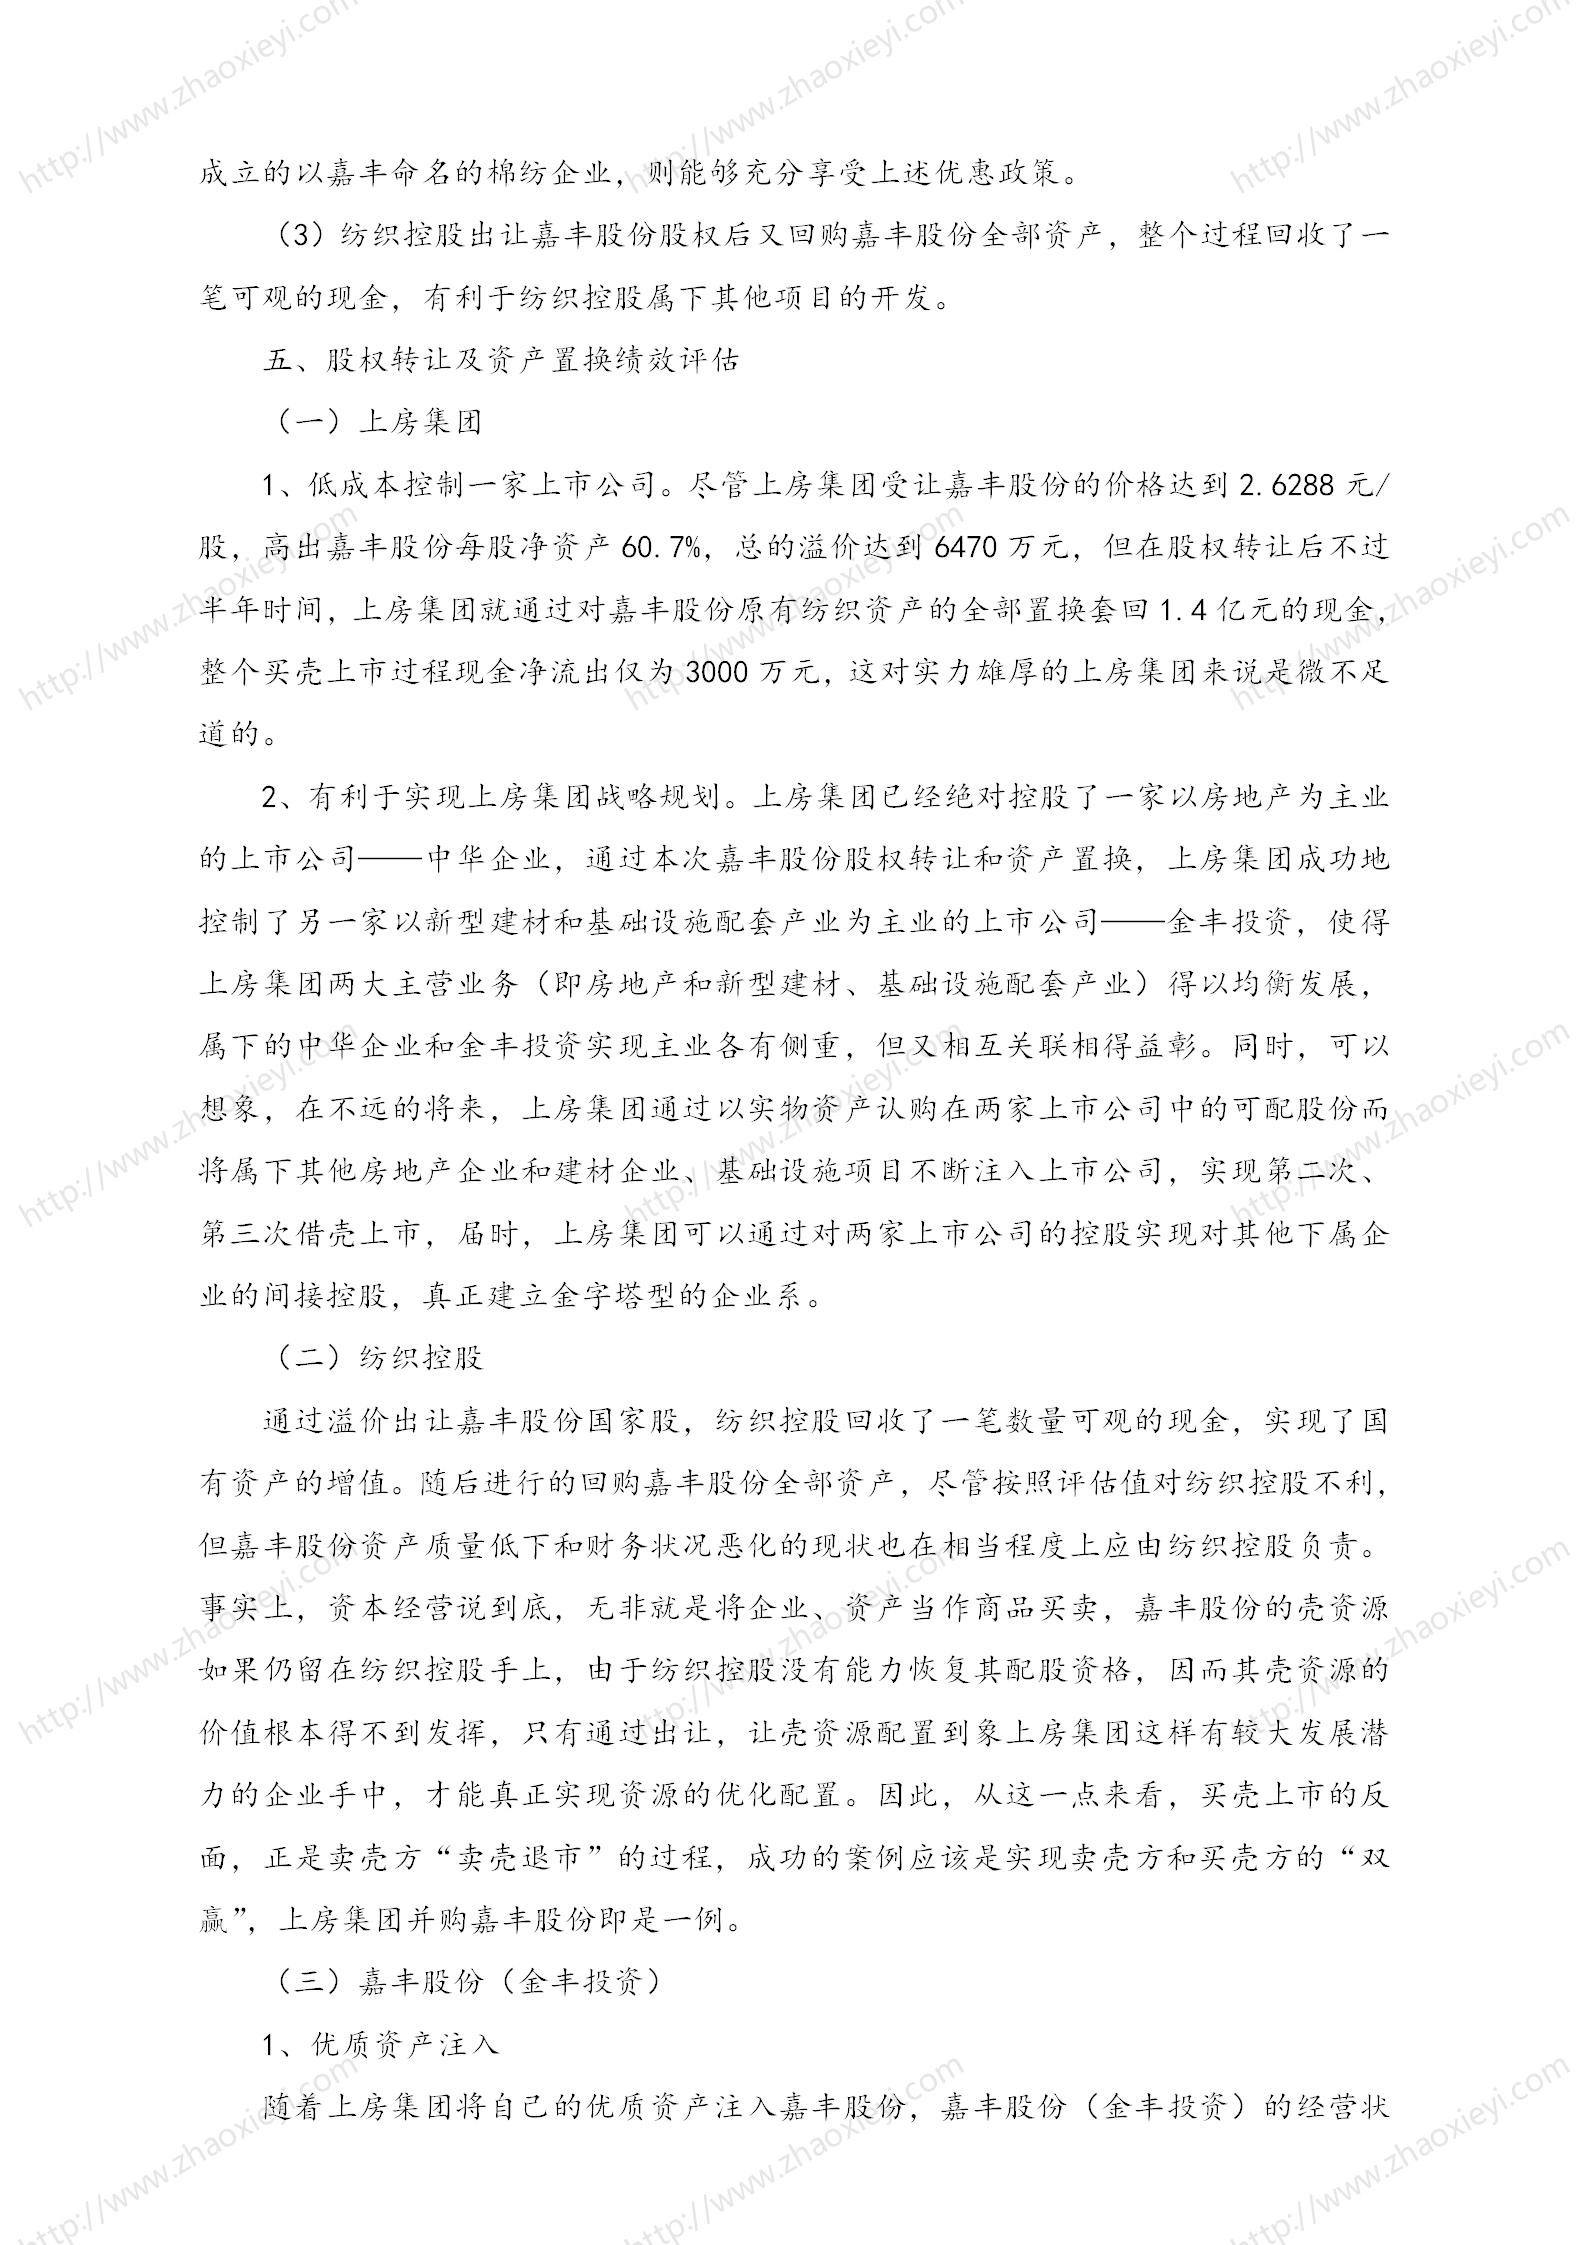 中国企业并购经典案例_110.jpg